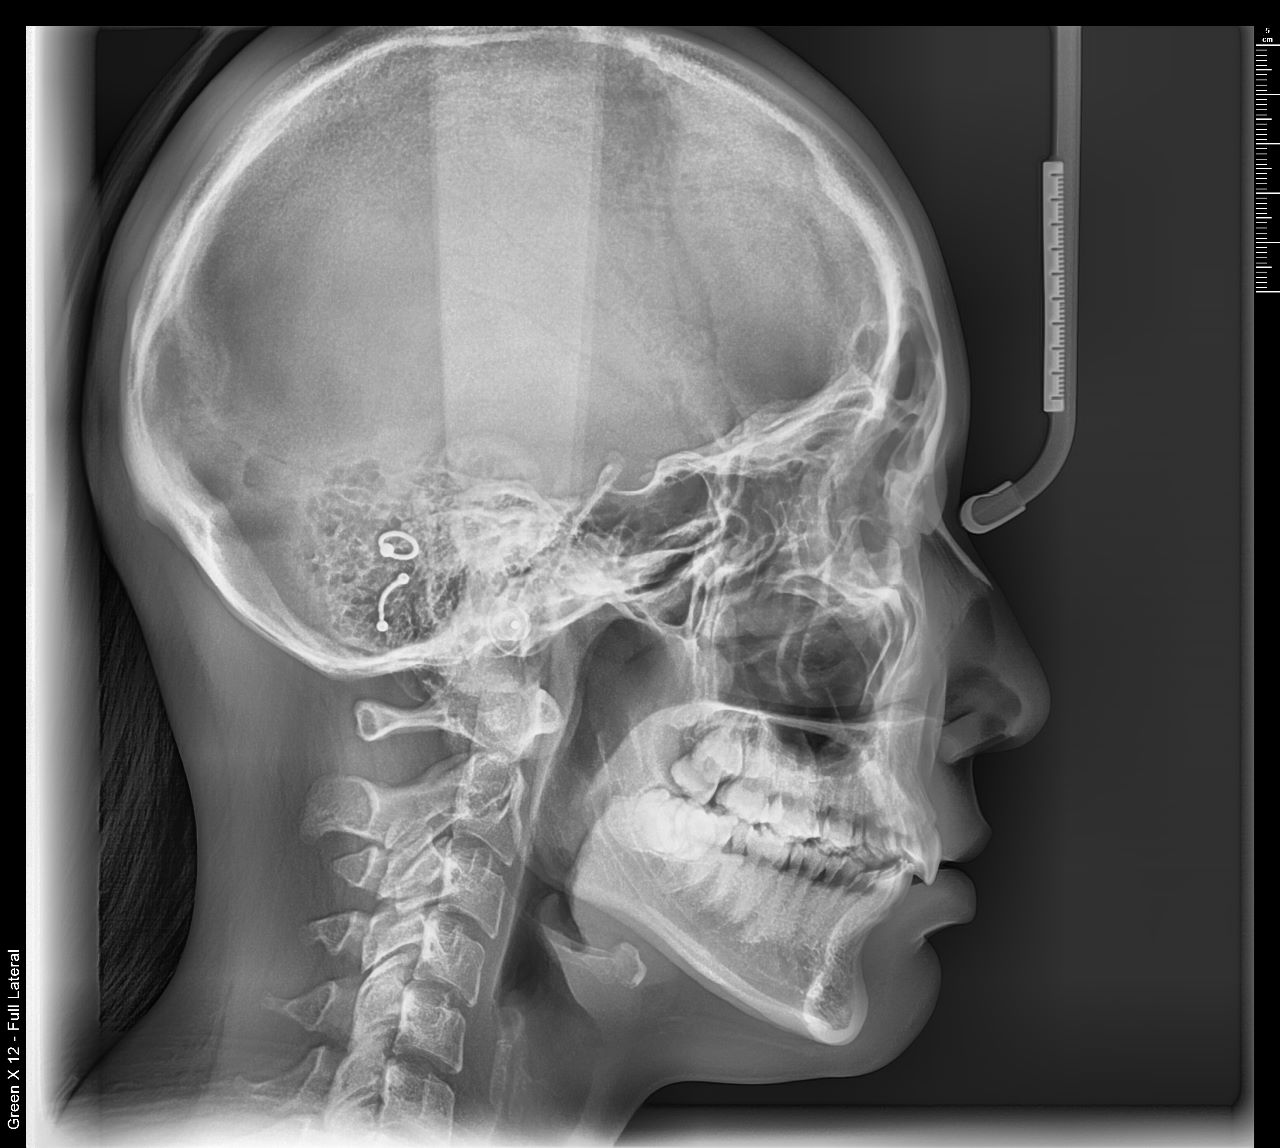 Tomógrafo Dental Vatech Green X12 - Radiografía Lateral de Cráneo